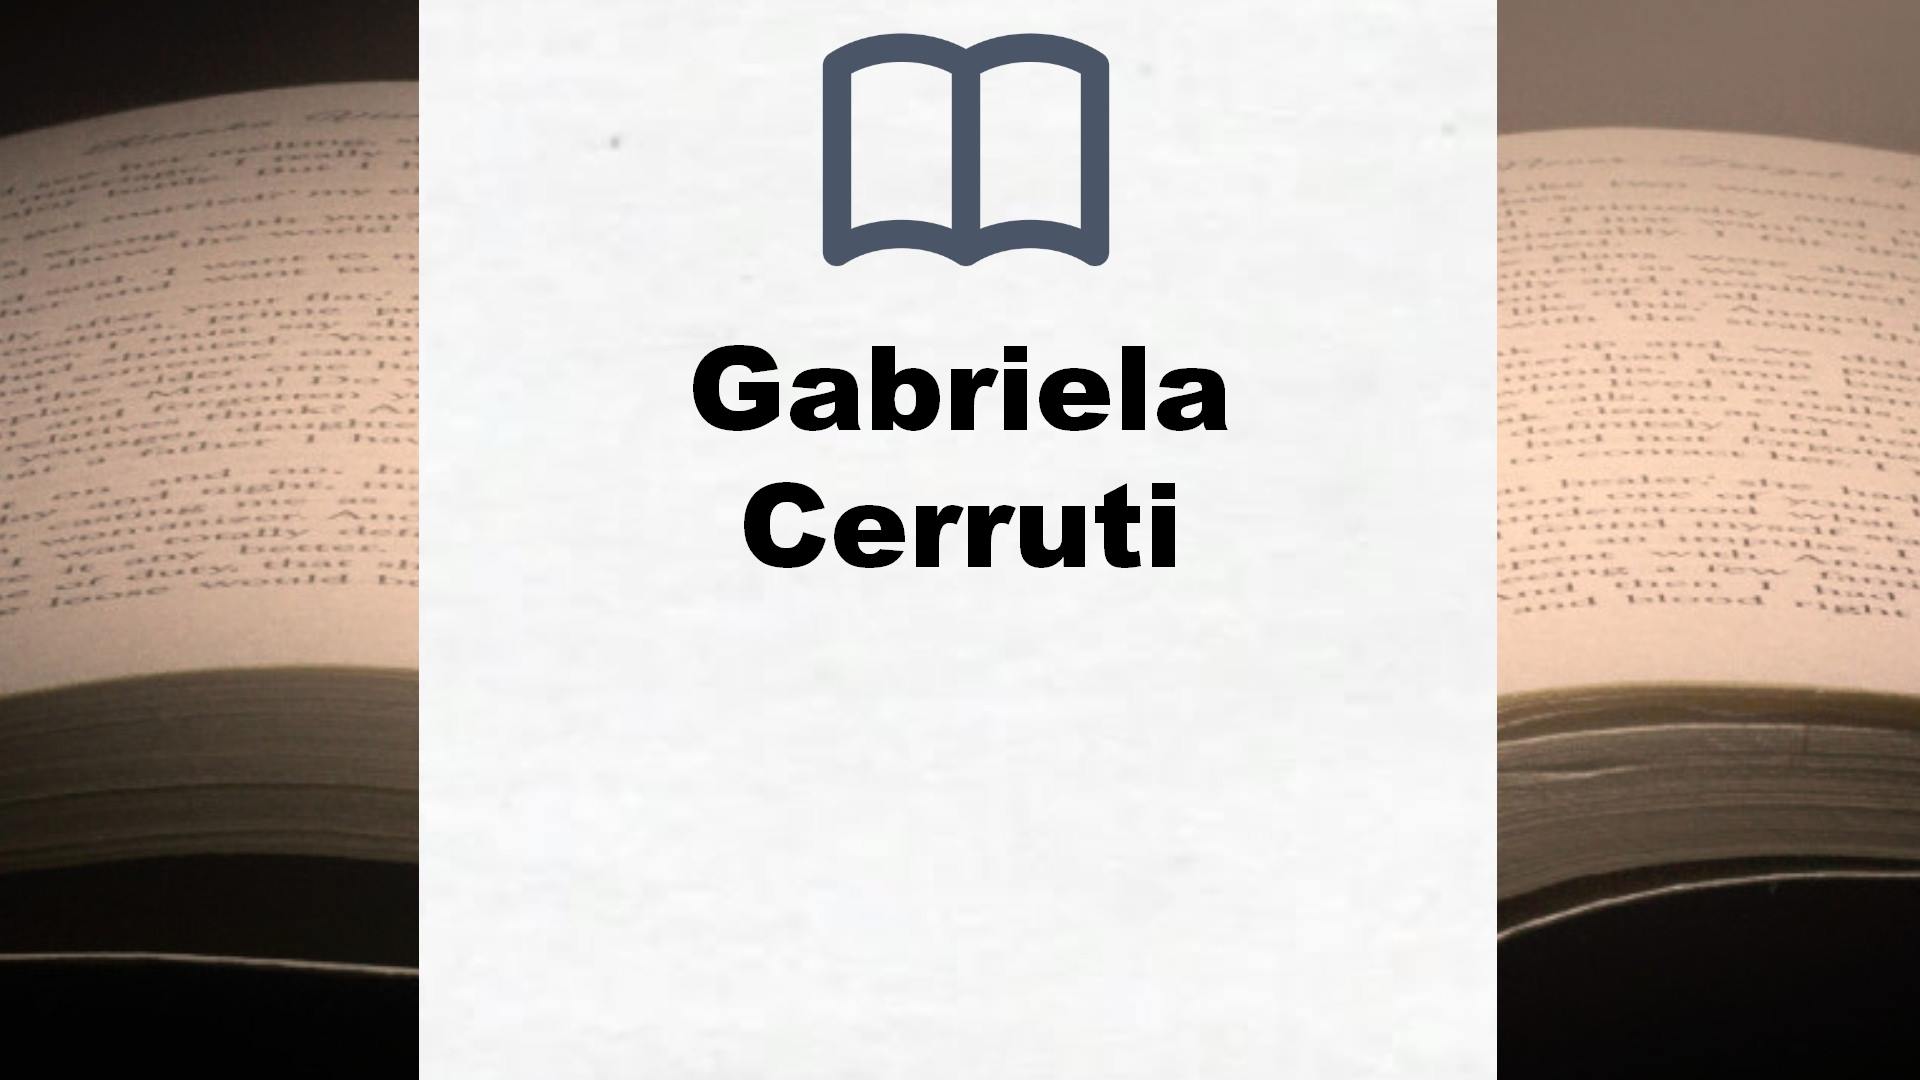 Libros Gabriela Cerruti